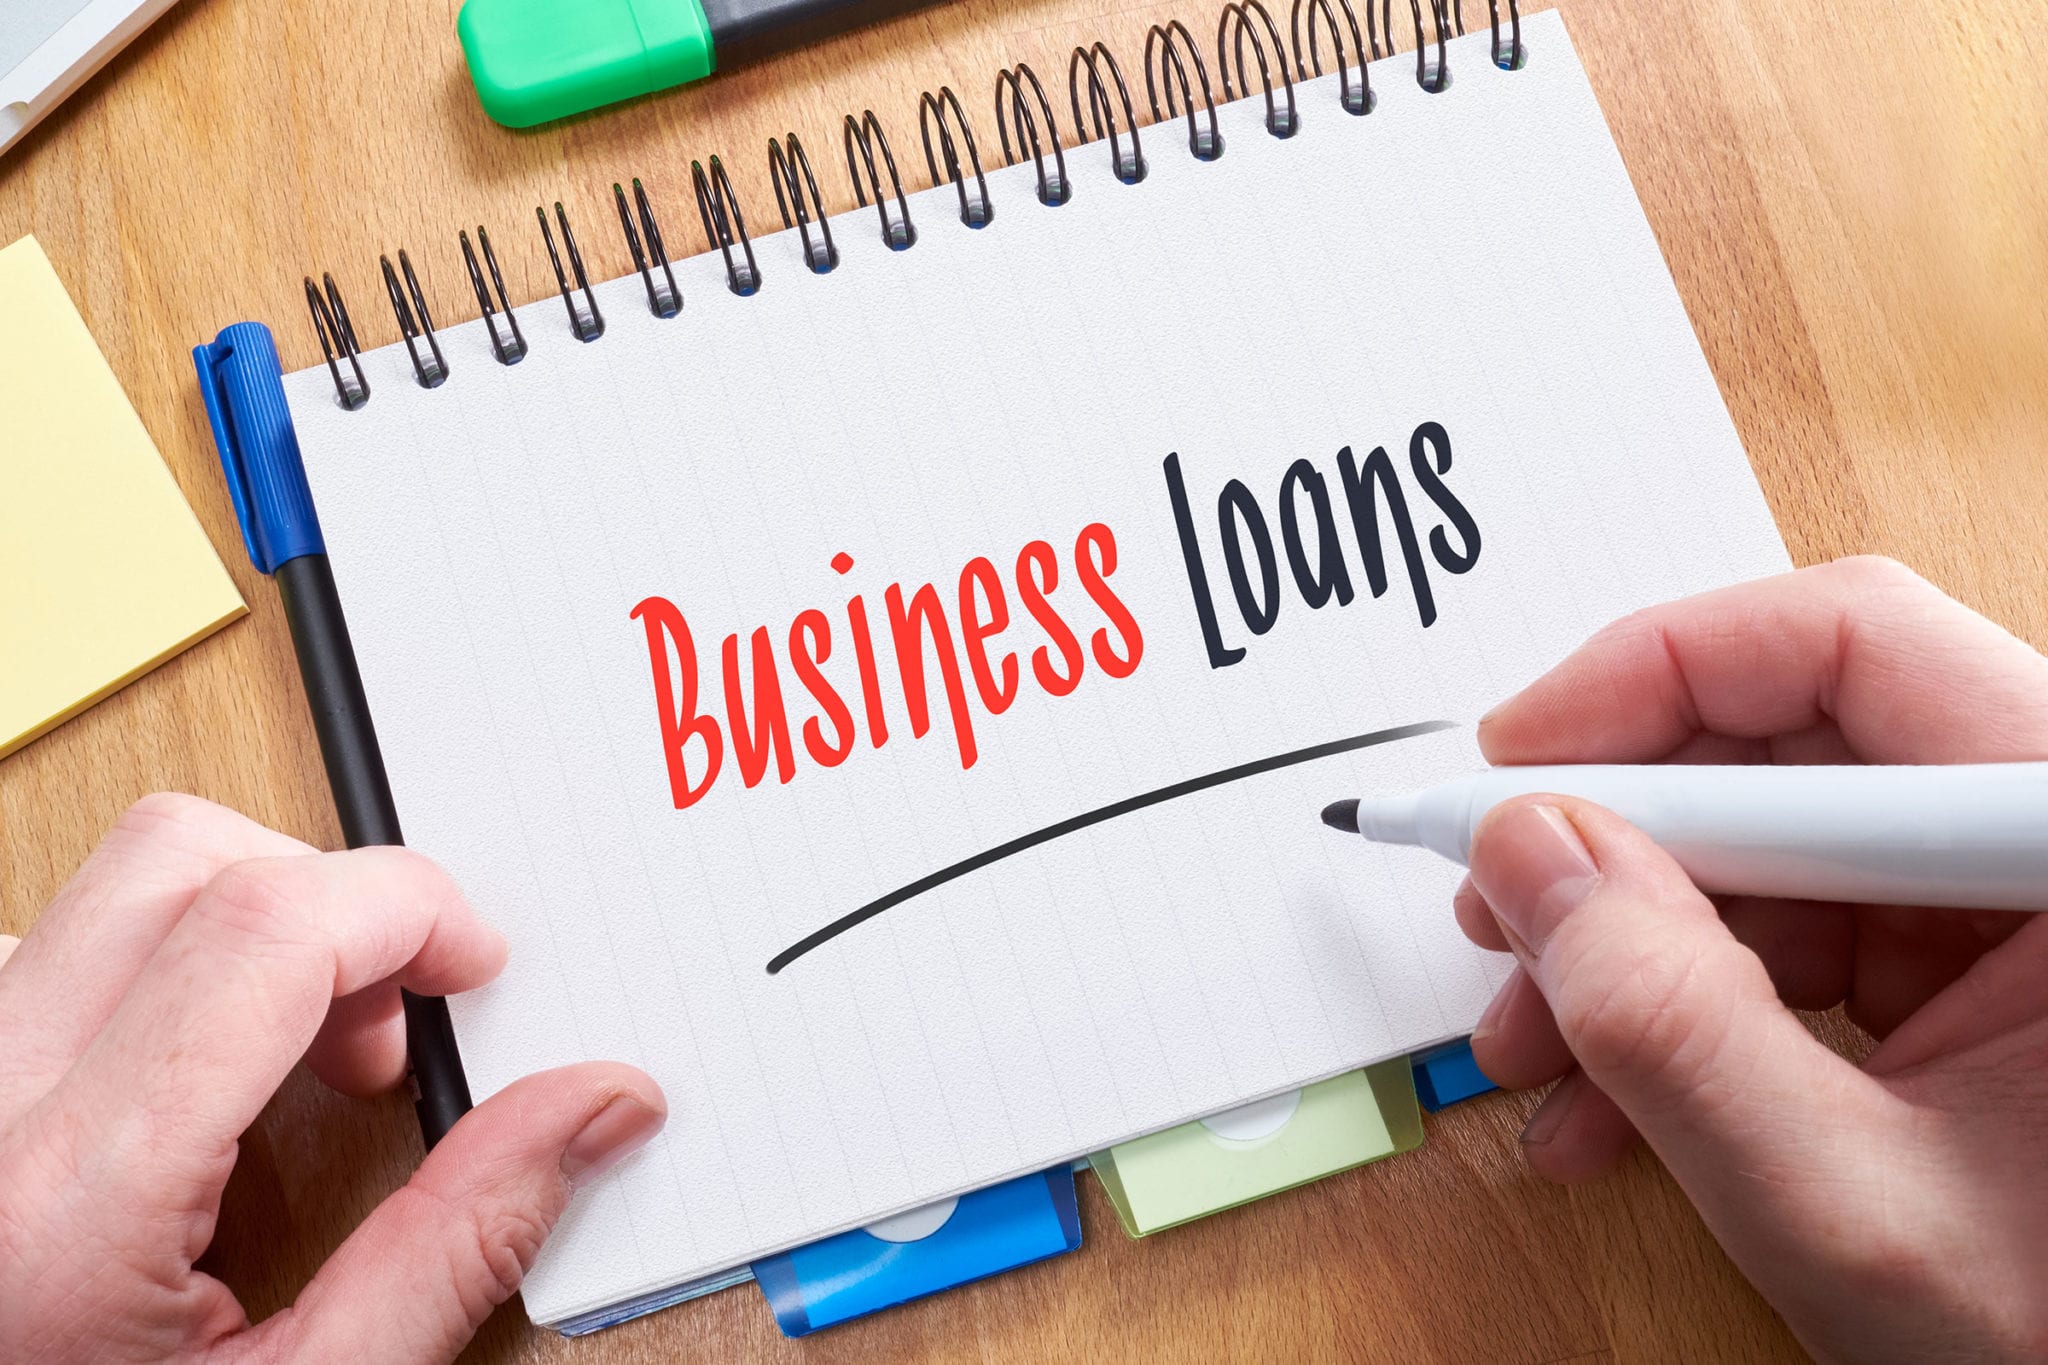 small business loans nz
